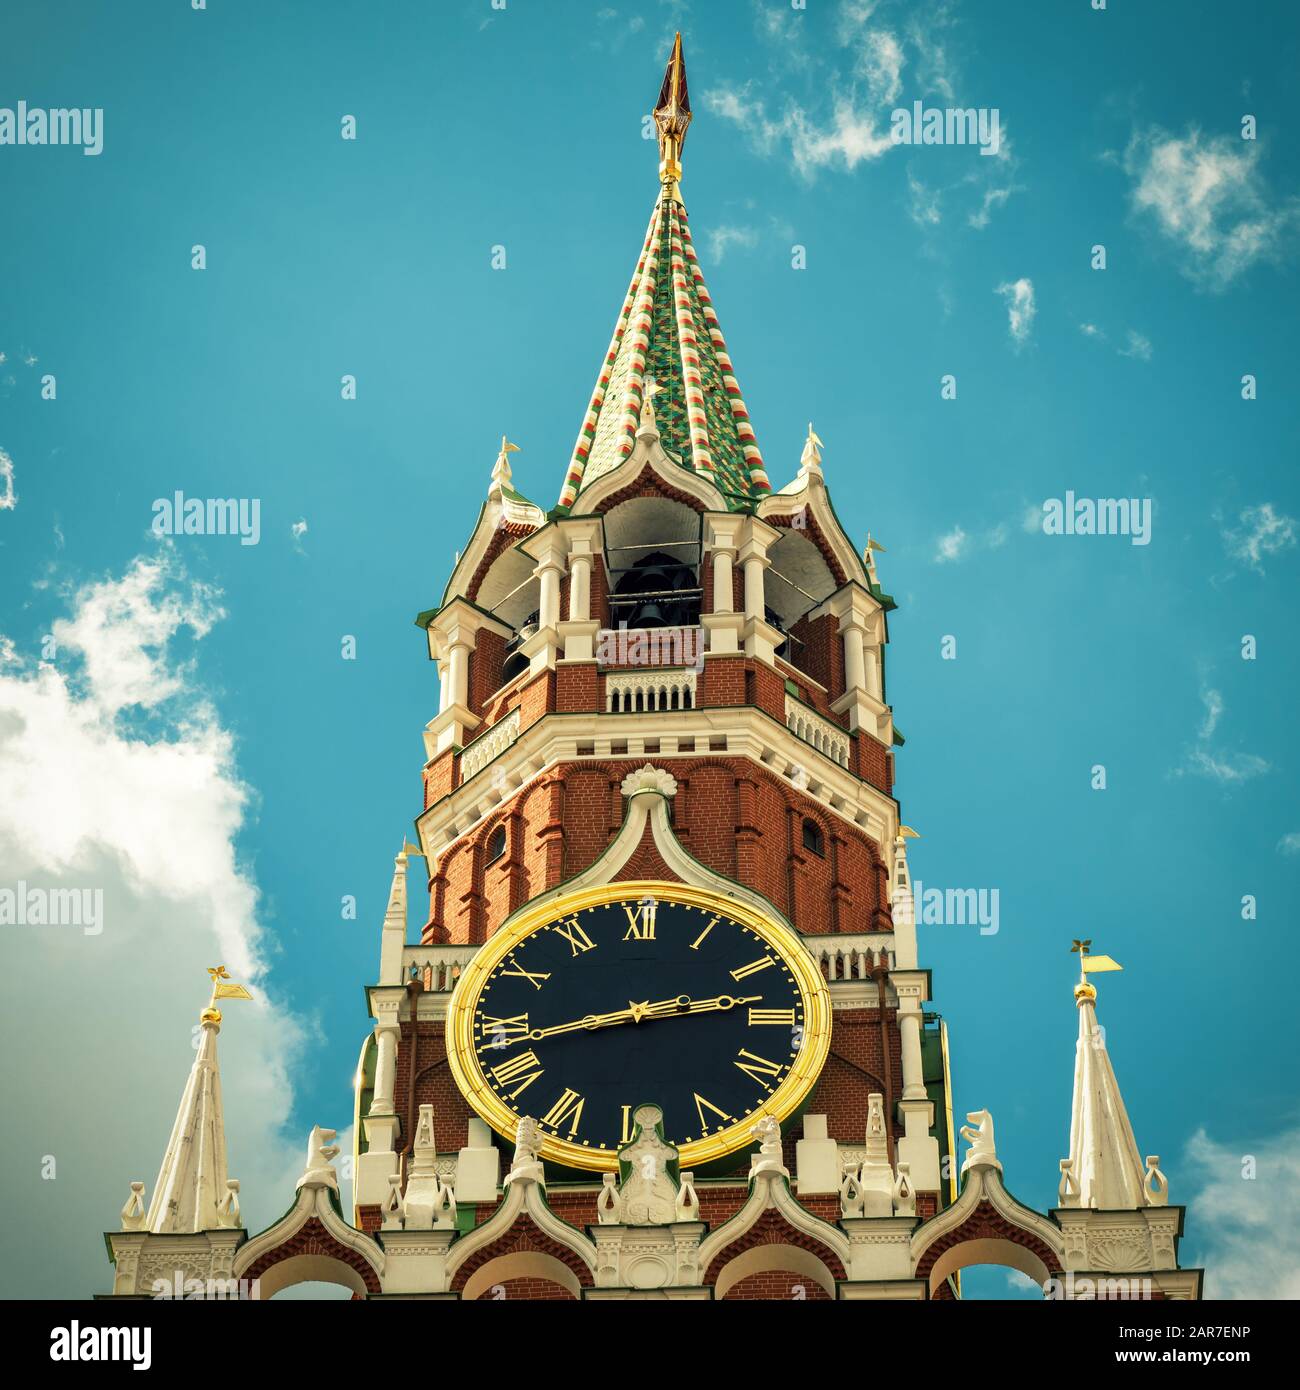 Der Spasskaja-Turm des Moskauer Kreml, Russland. Der Moskauer Kreml ist die Residenz des russischen präsidenten und die wichtigste Touristenattraktion Moskaus. Stockfoto